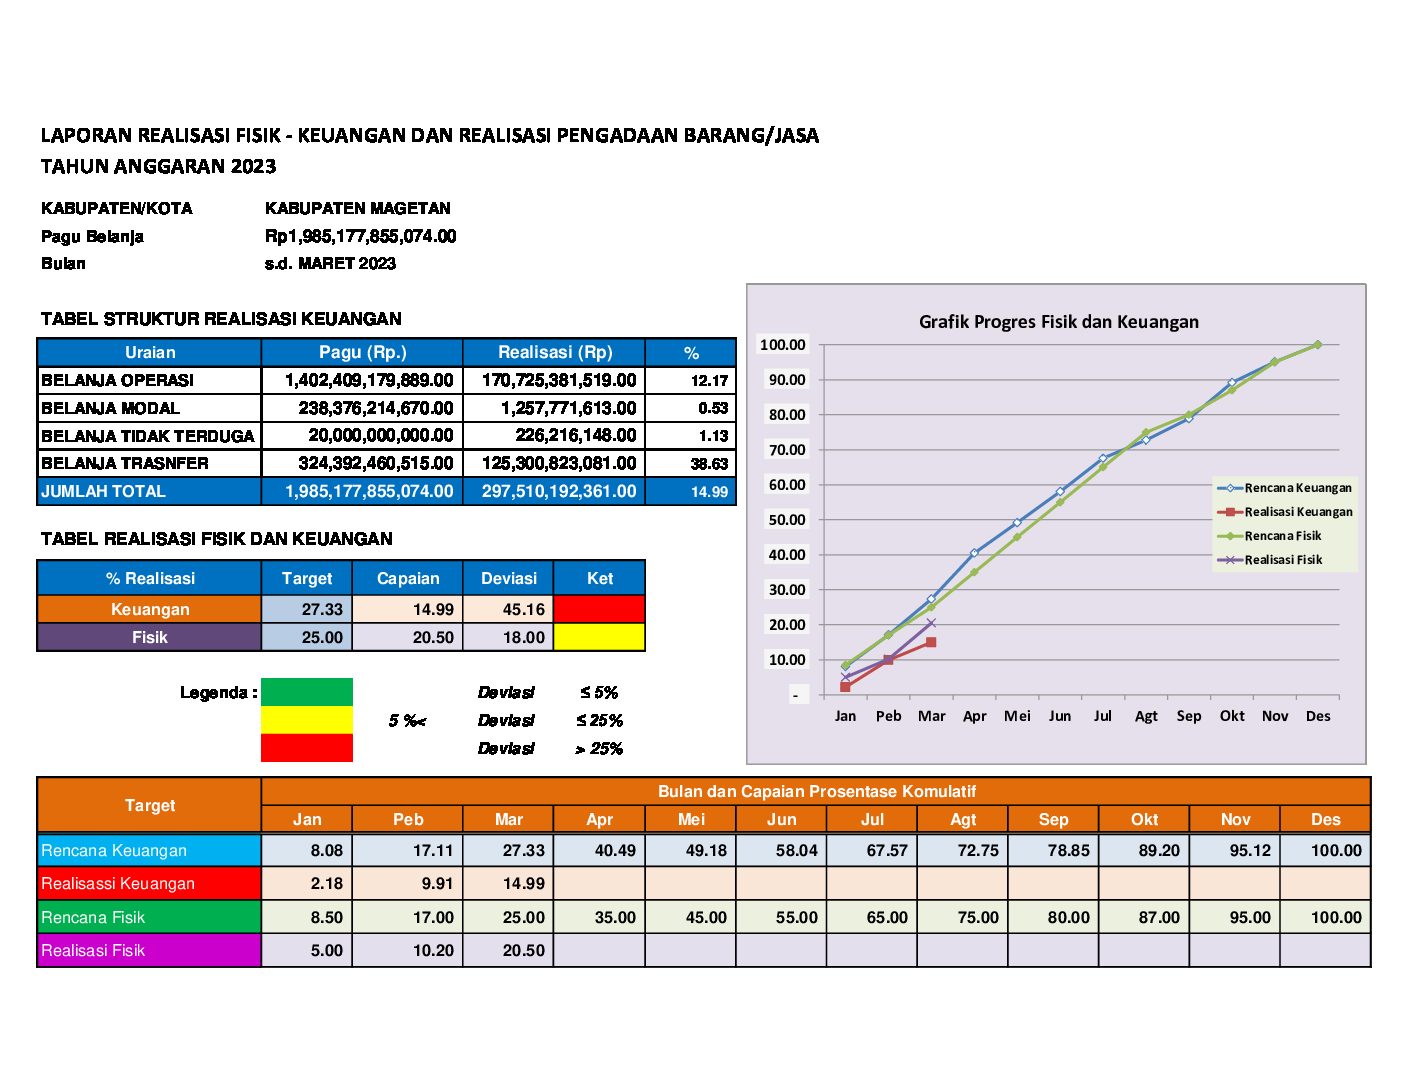 Realisasi Fisik dan Keuangan Kabupaten Magetan sampai dengan 31 Maret 2023